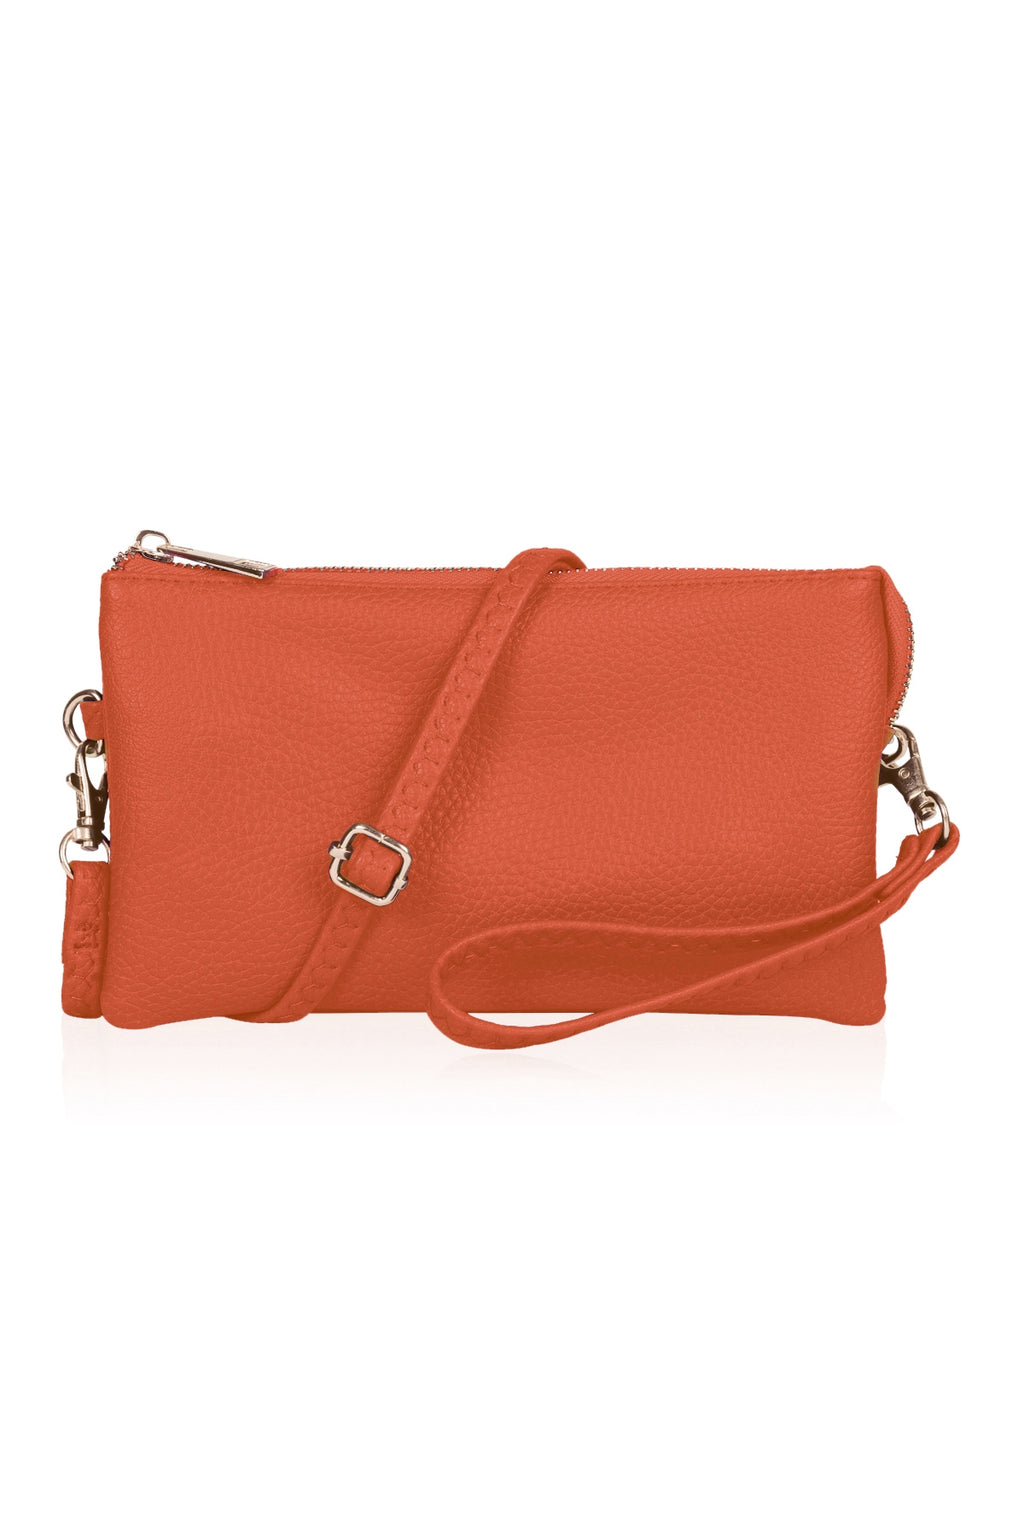 Wholesale Designer Handbags – Where to Buy Them | Wholesale designer  handbags, Fall handbags, Wholesale fashion handbags